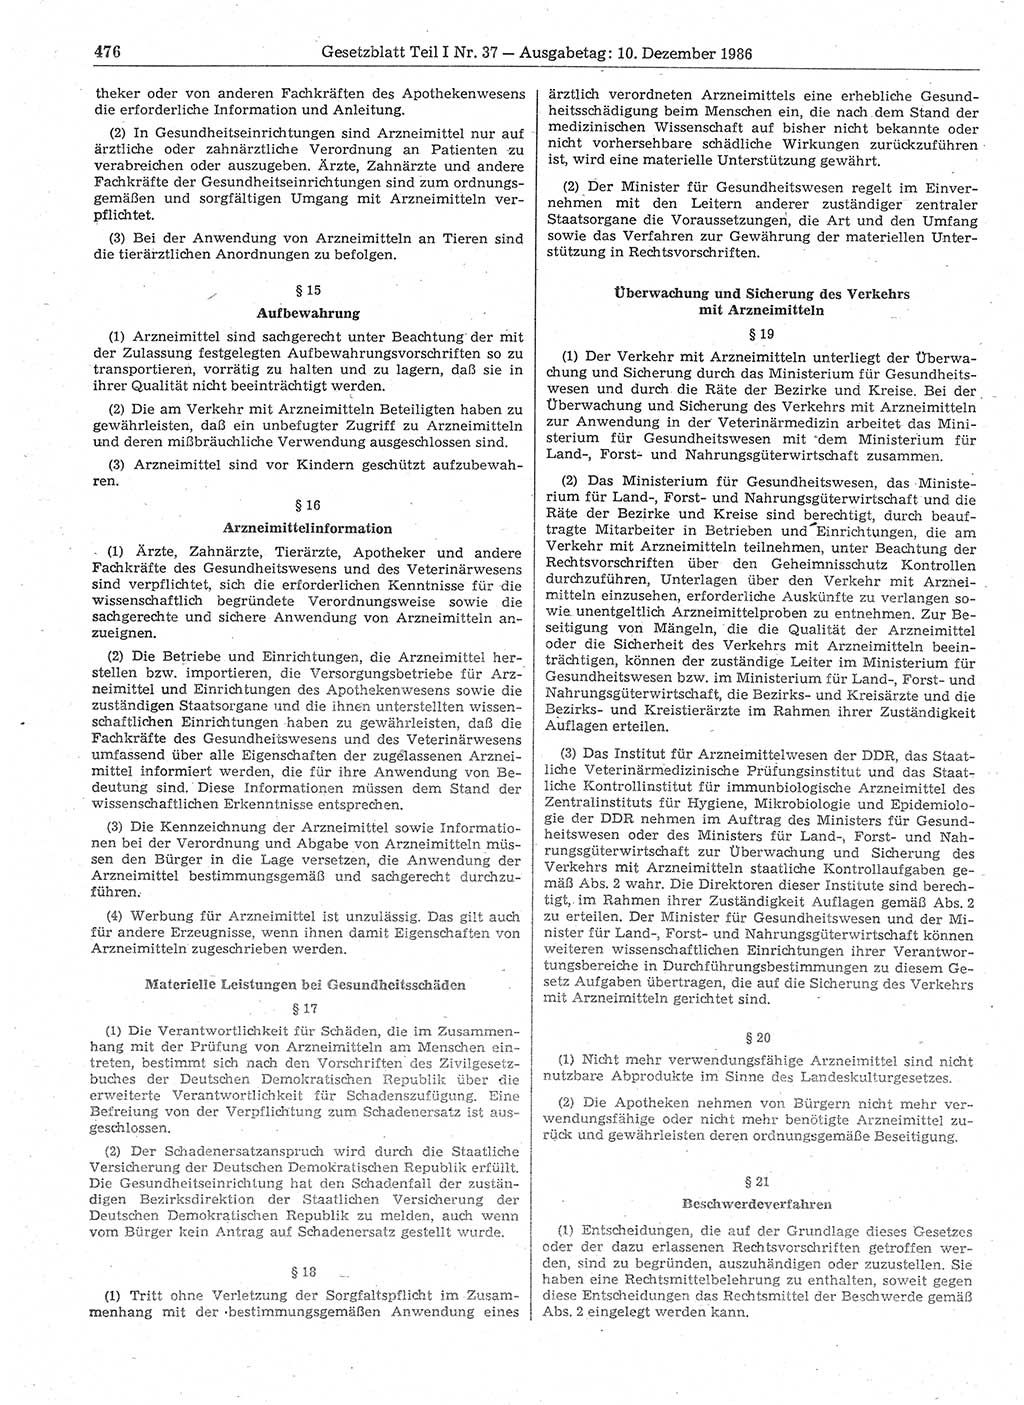 Gesetzblatt (GBl.) der Deutschen Demokratischen Republik (DDR) Teil Ⅰ 1986, Seite 476 (GBl. DDR Ⅰ 1986, S. 476)